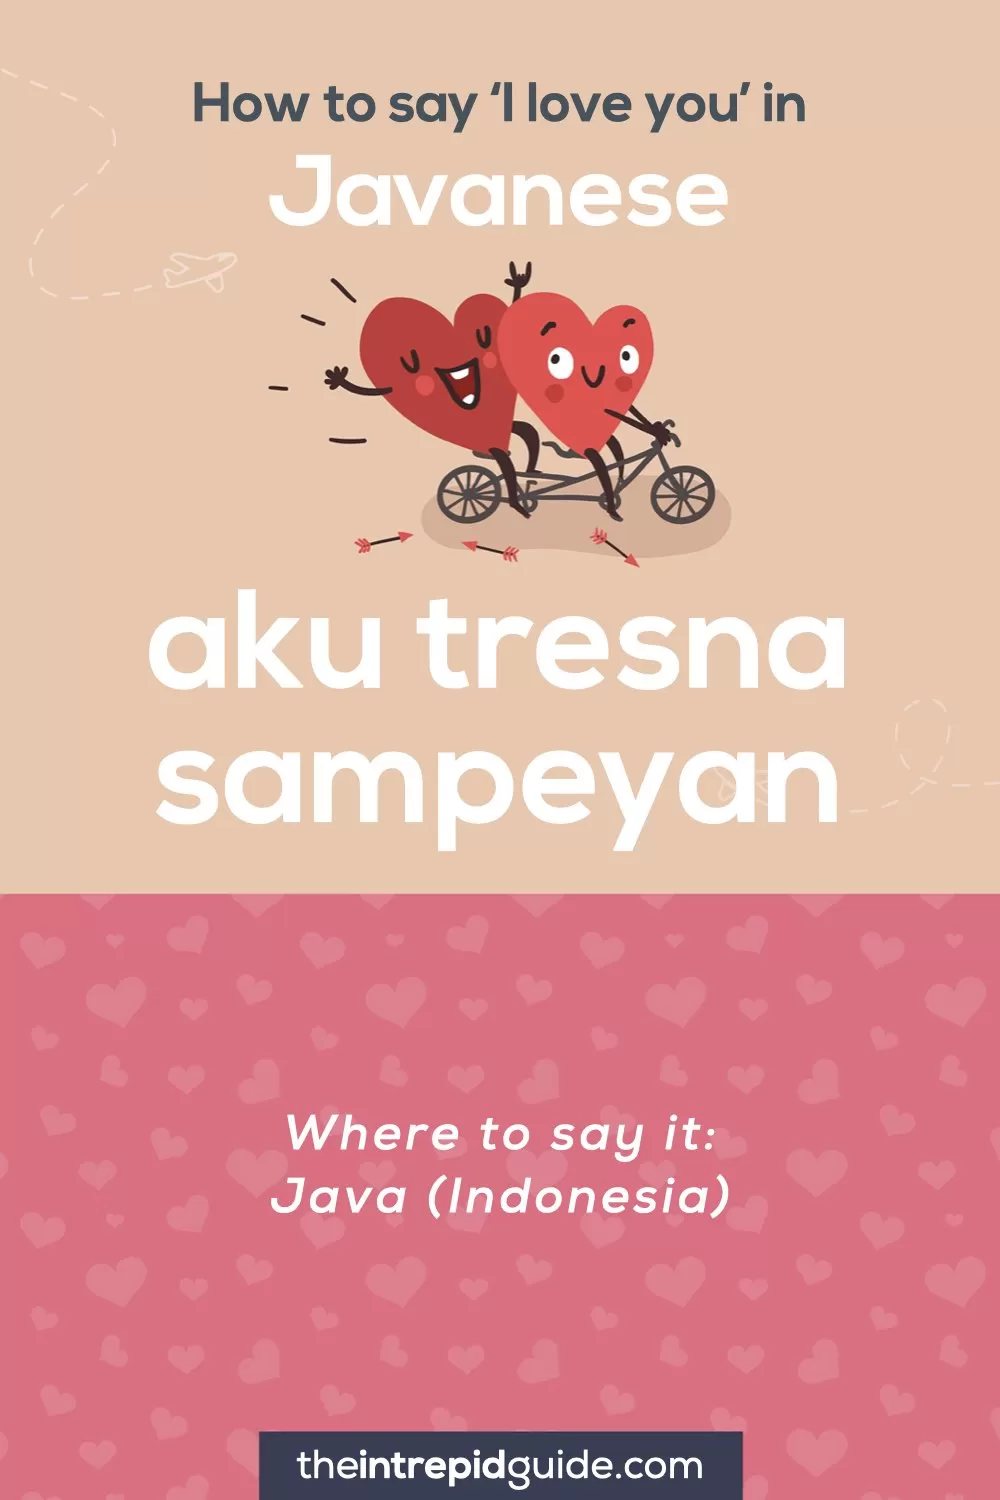 How to say I love you in different languages - Javanese - aku tresna sampeyan